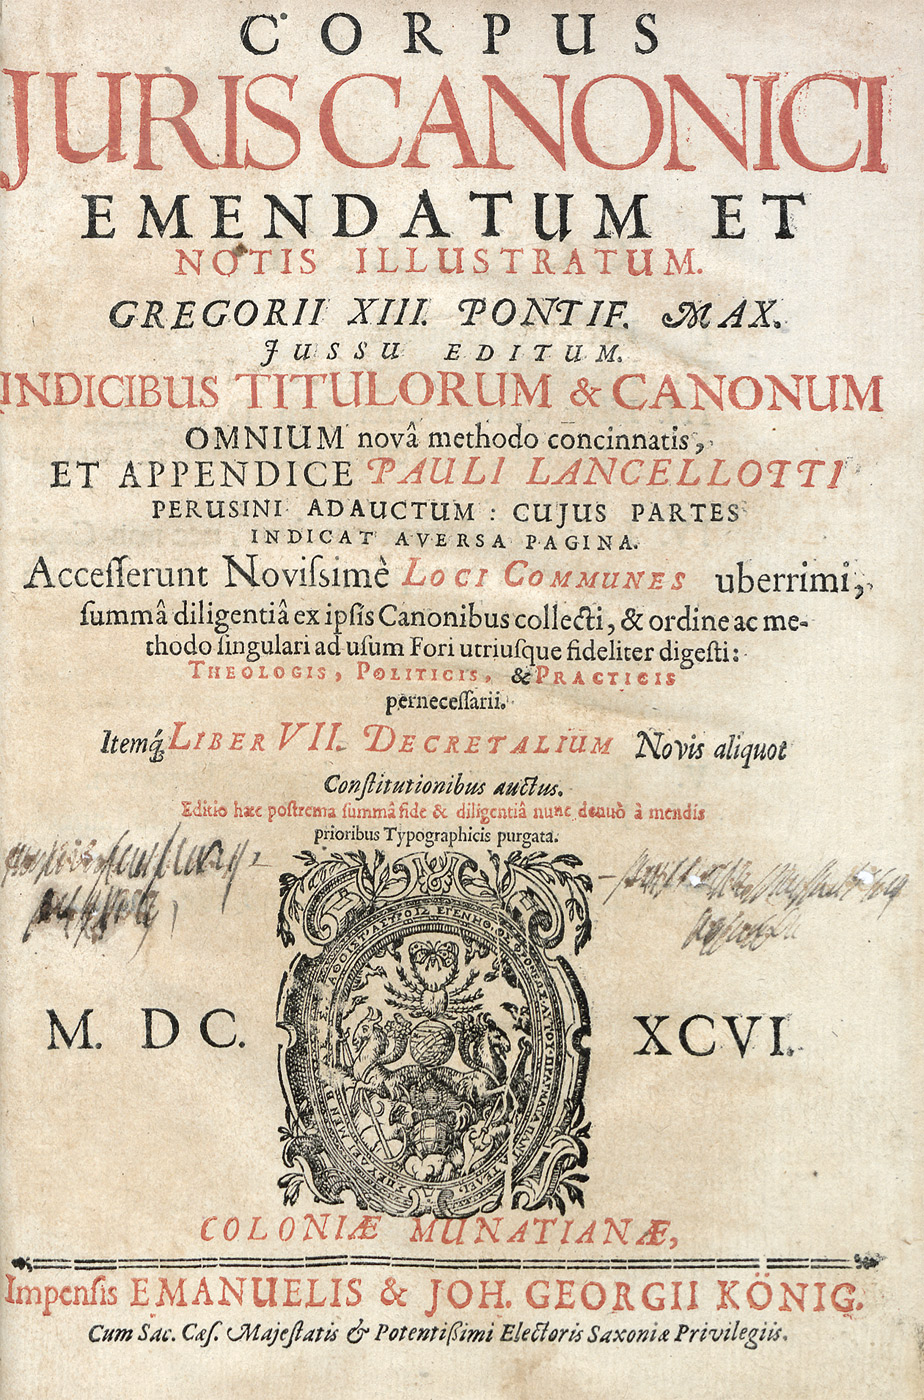 Lot 1262, Auction  115, Corpus juris canonici, emendatum et notis illustratum. Gregorii XIII. Pontif. Max. 